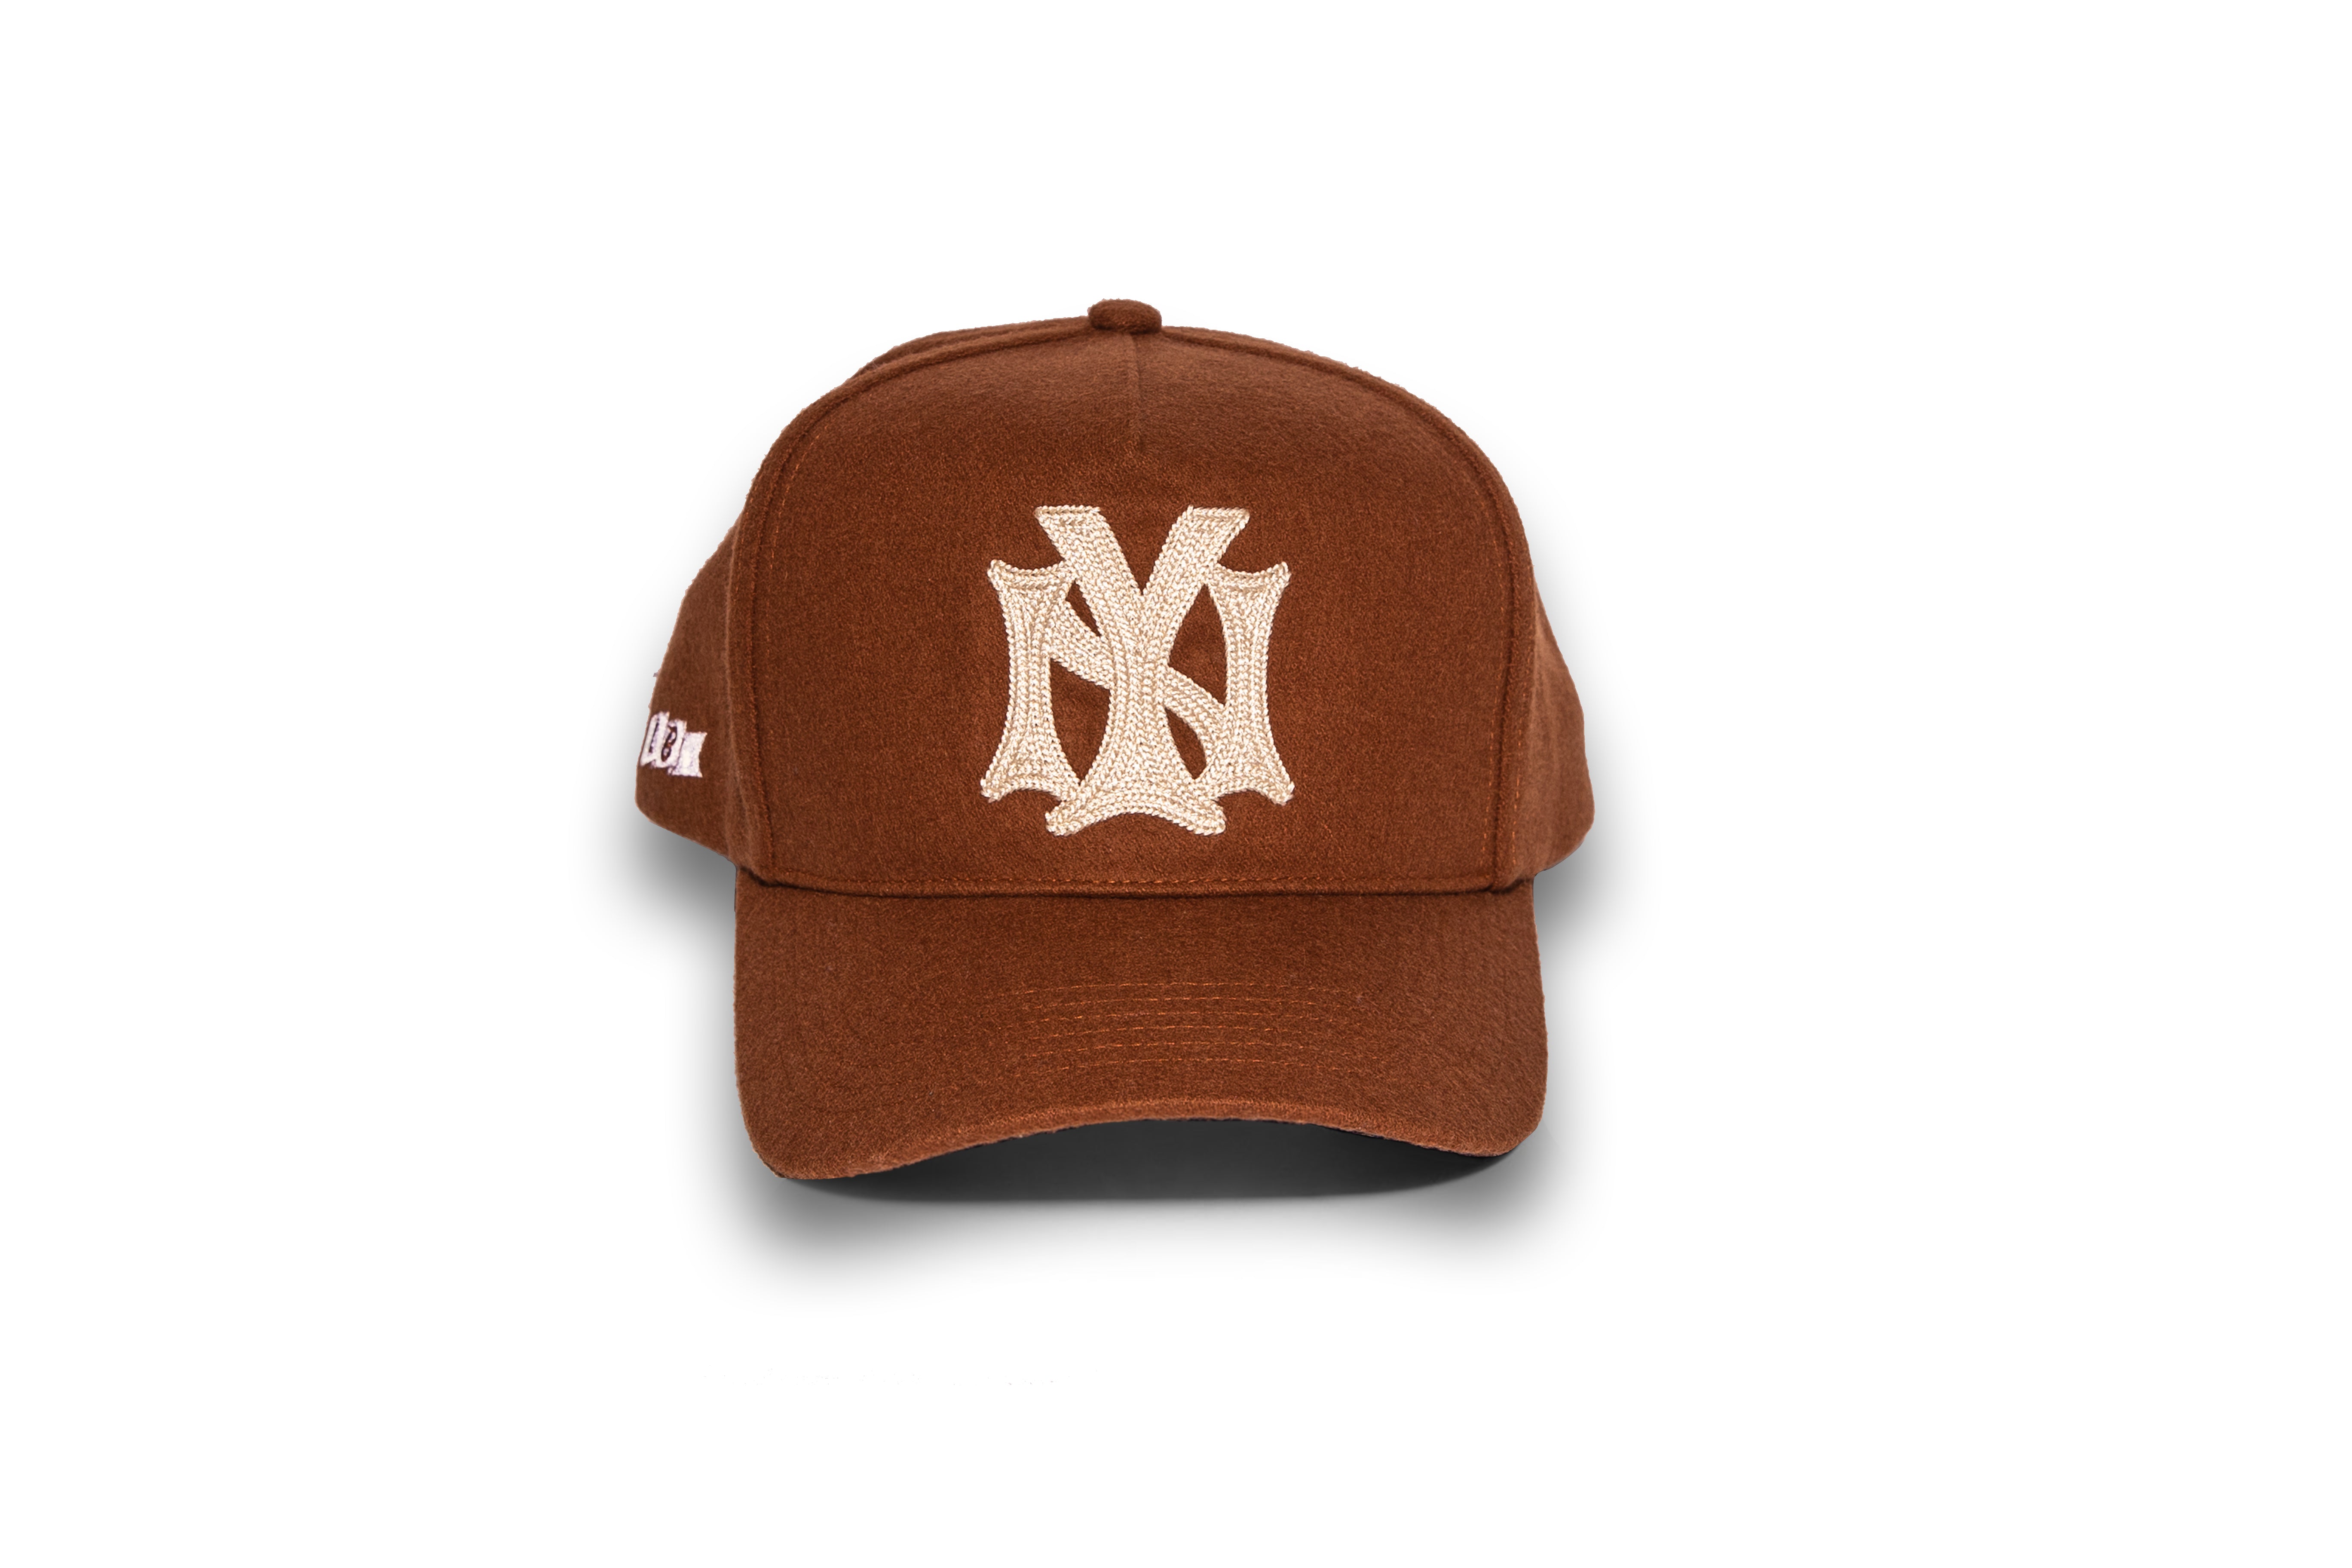 NY Wool Baseball Cap